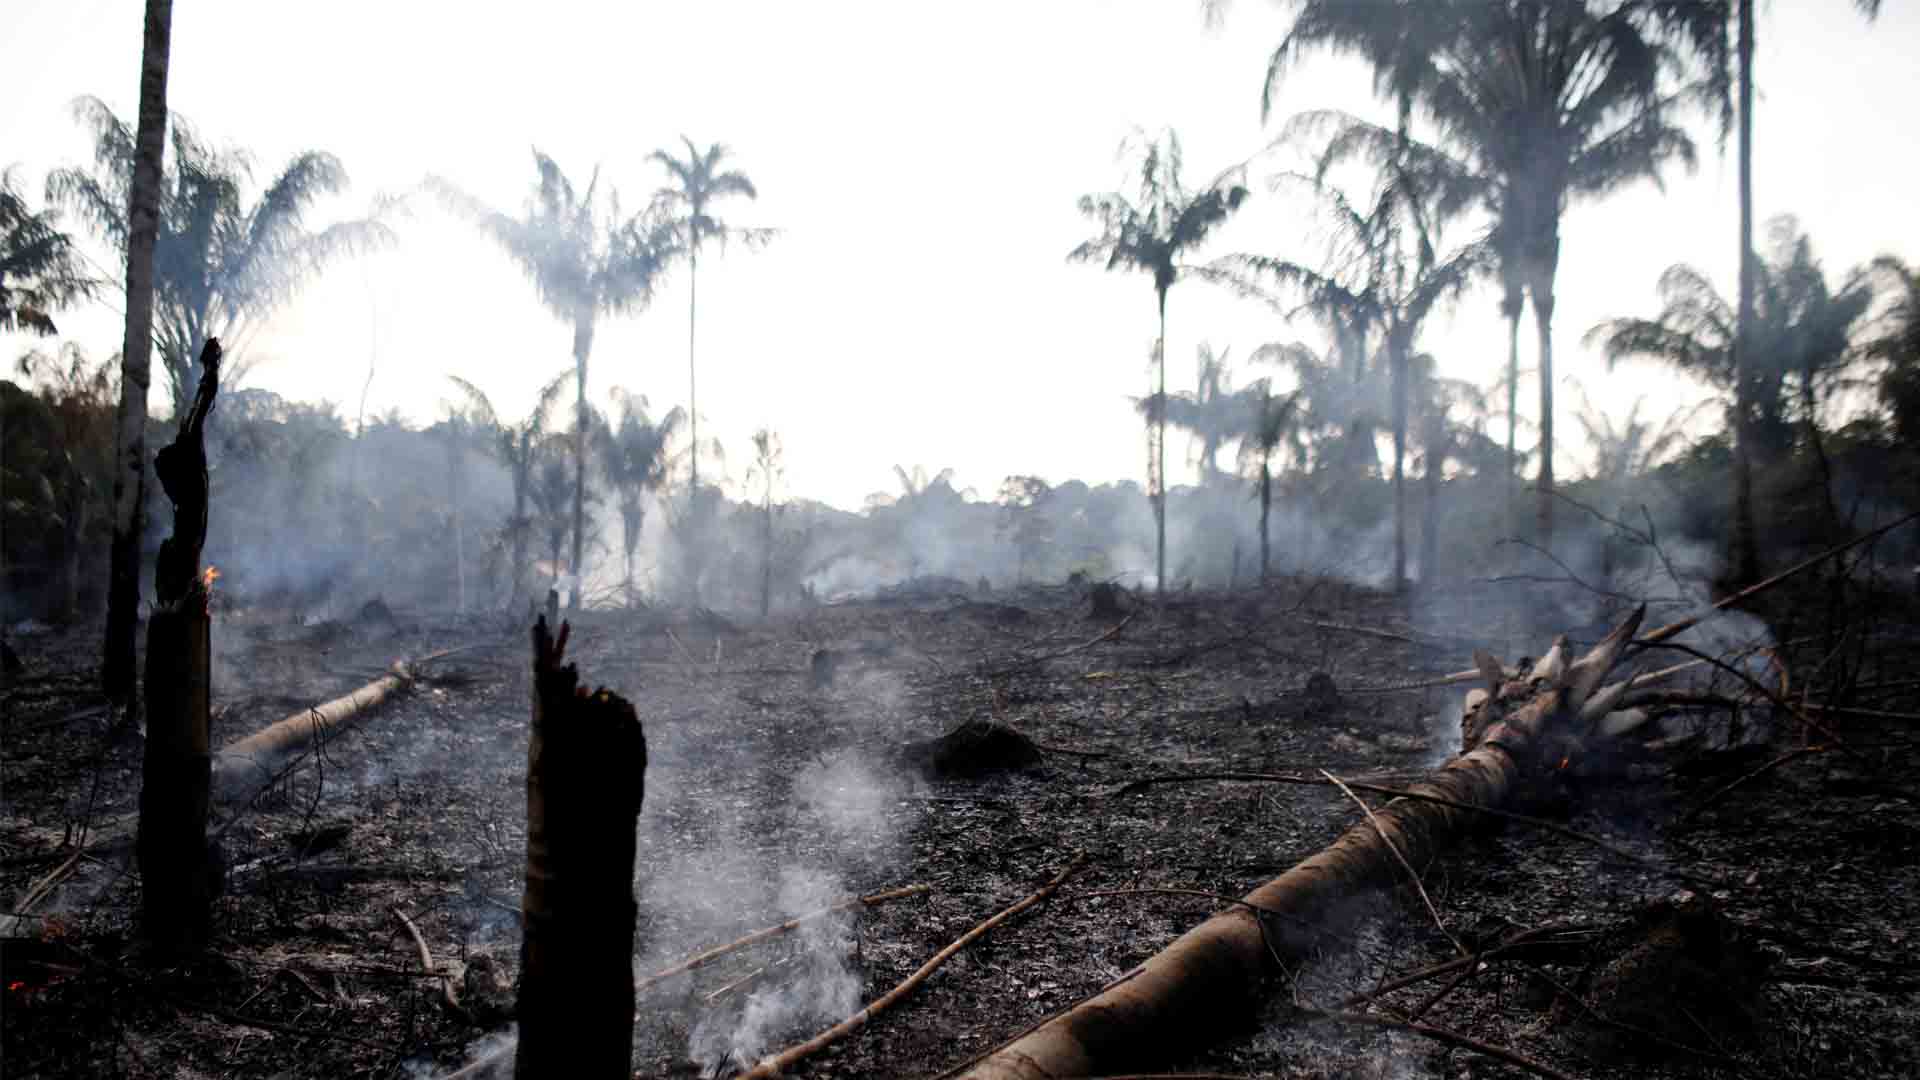 Macron dice que los incendios en el Amazonas son una "crisis internacional" y Bolsonaro le acusa de "mentalidad colonialista"